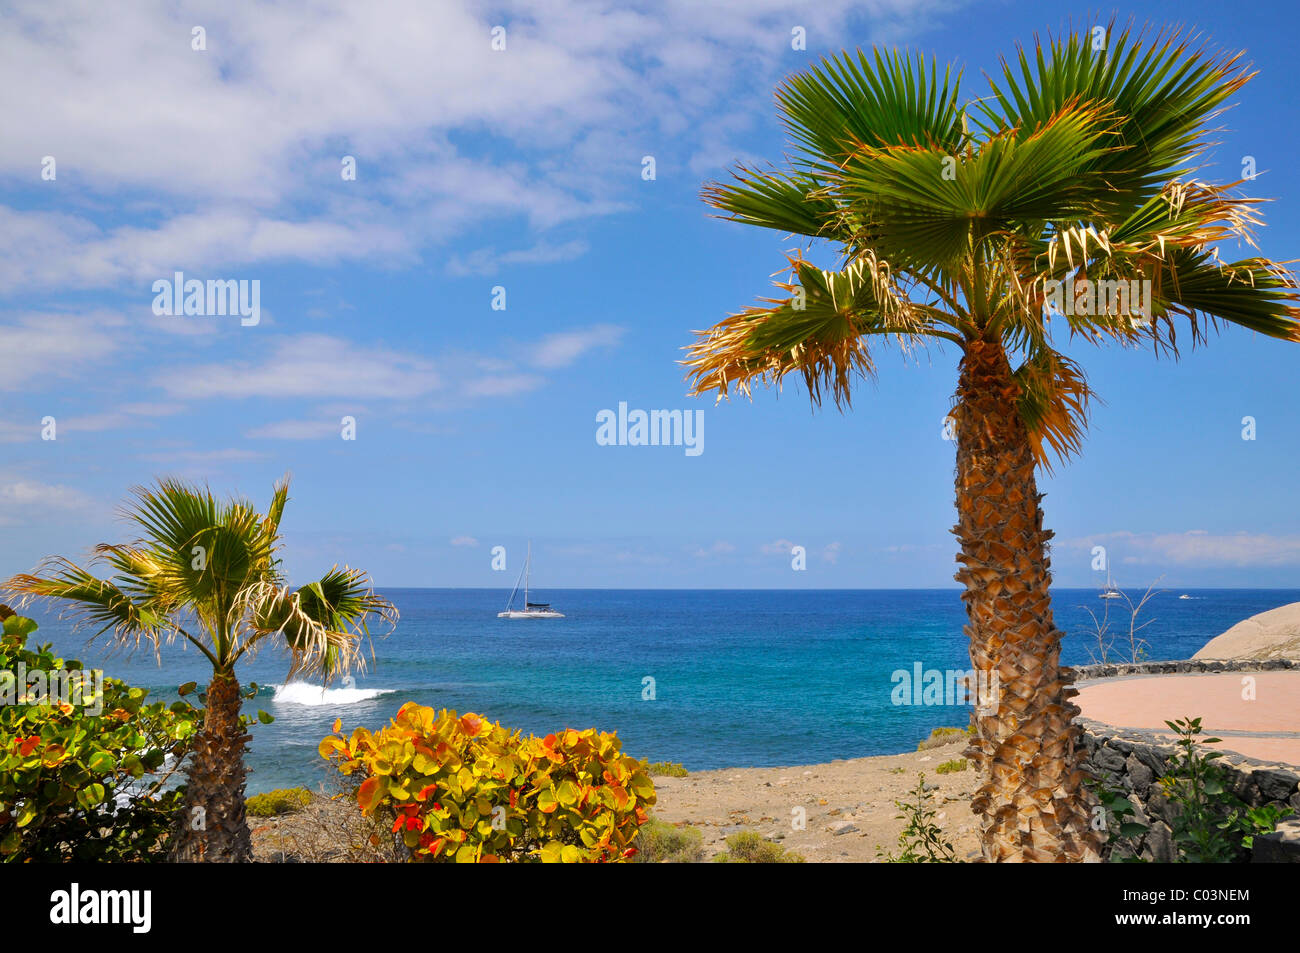 Coccoloba Palm arbre, arbuste et la mer avec bateau sur la costa Adeje de la partie sud-ouest de Tenerife, dans les îles Canaries Banque D'Images